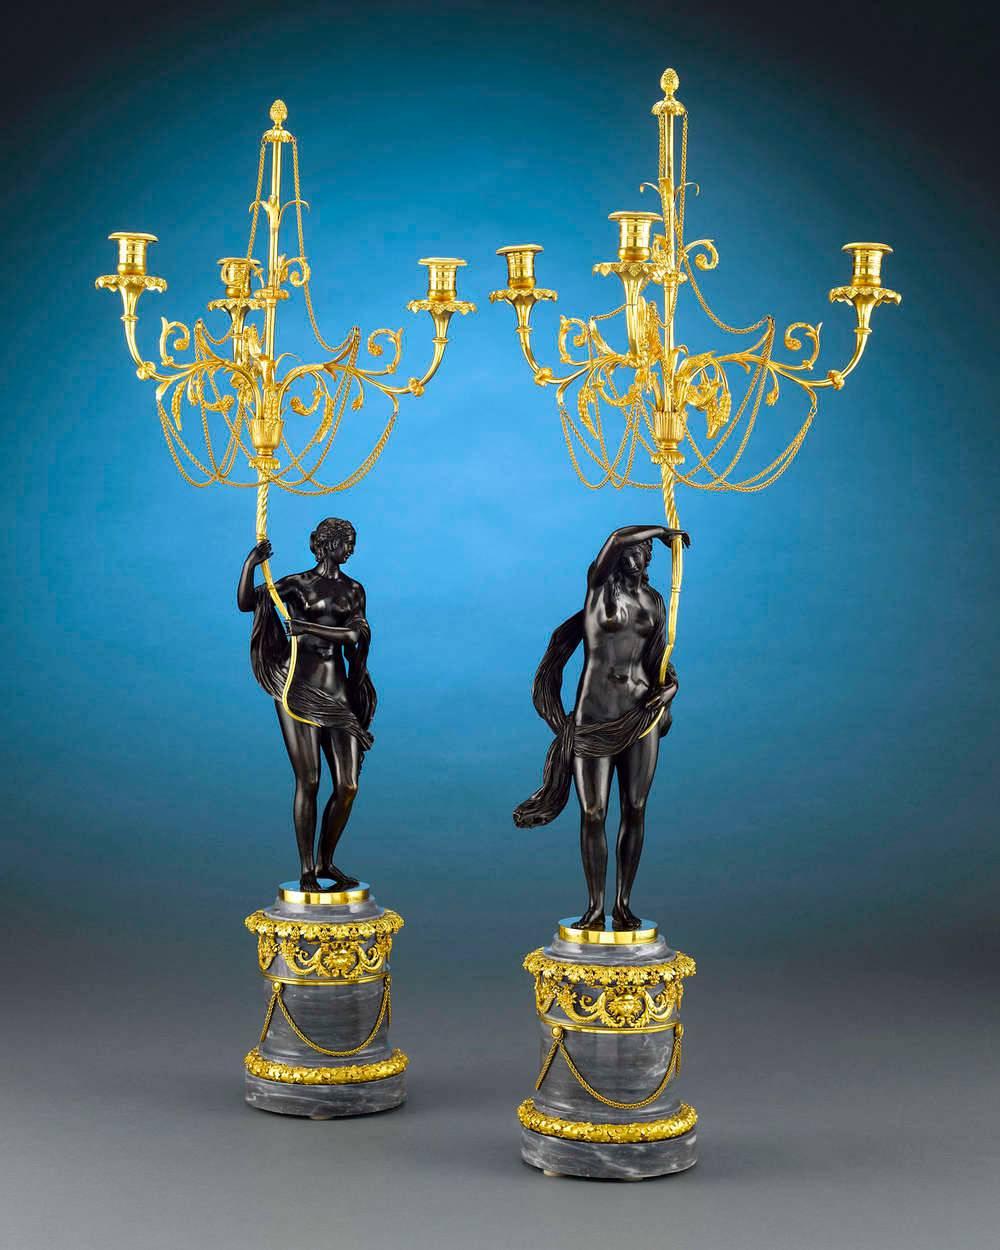 Dieses majestätische und unglaublich seltene Leuchterpaar ist der Inbegriff russischer Handwerkskunst und wäre dem Zaren würdig gewesen. Diese prächtigen figuralen Bronzeleuchter im Stil Ludwigs XVI. wurden im neoklassizistischen Stil geschaffen,